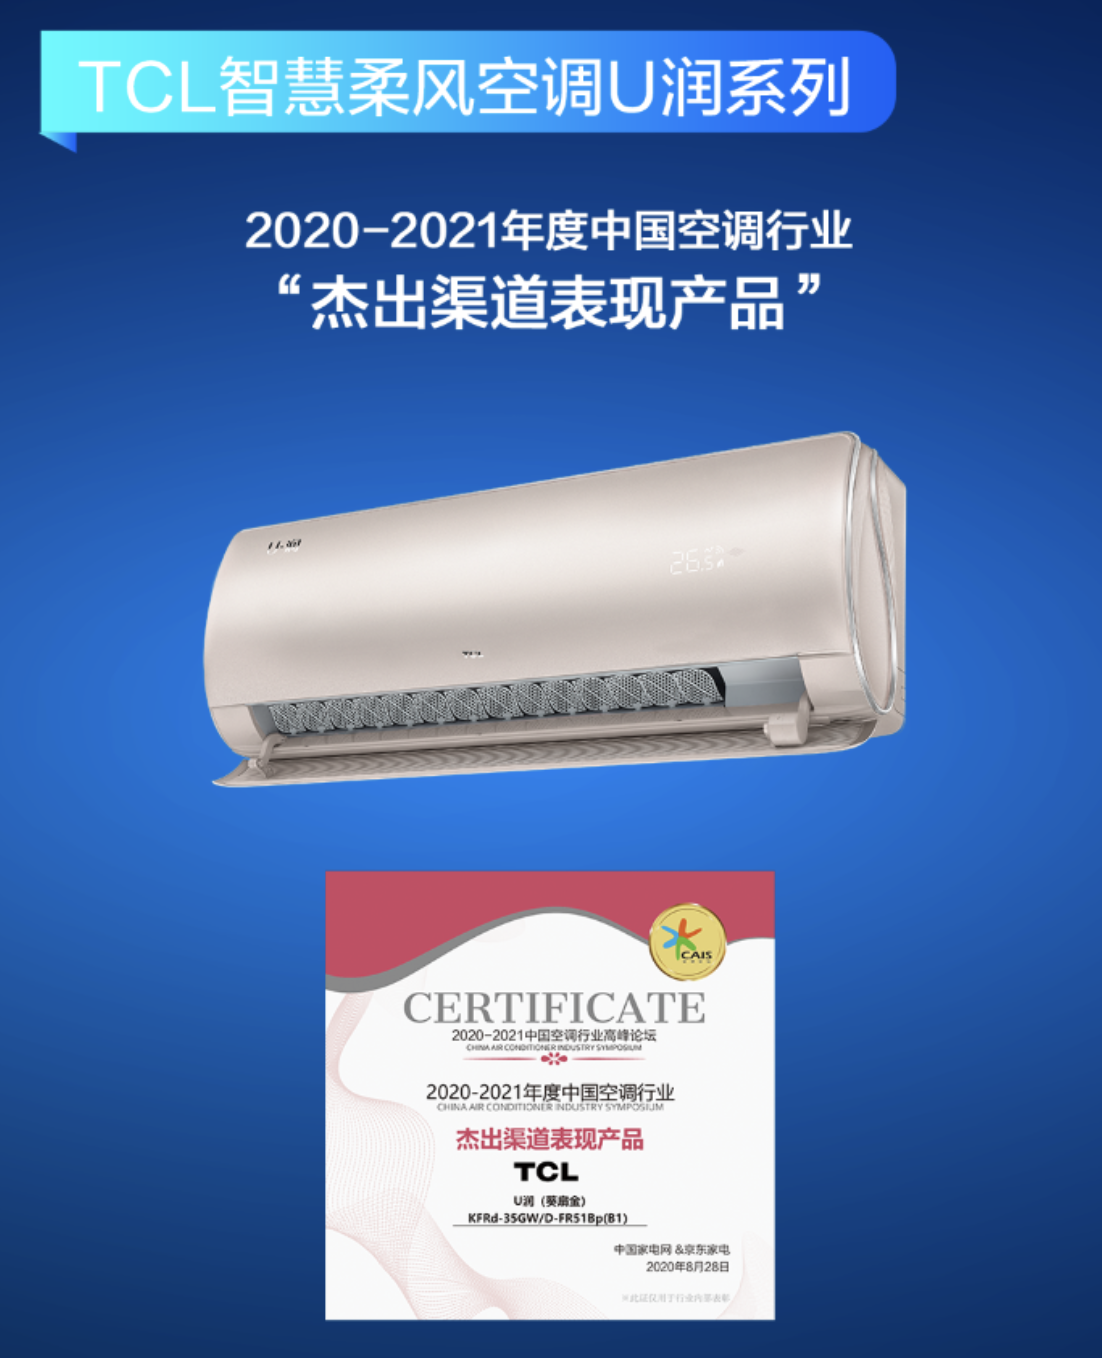 2020中国空调行业高峰论坛 TCL智慧柔风空调横扫三项大奖 智能公会